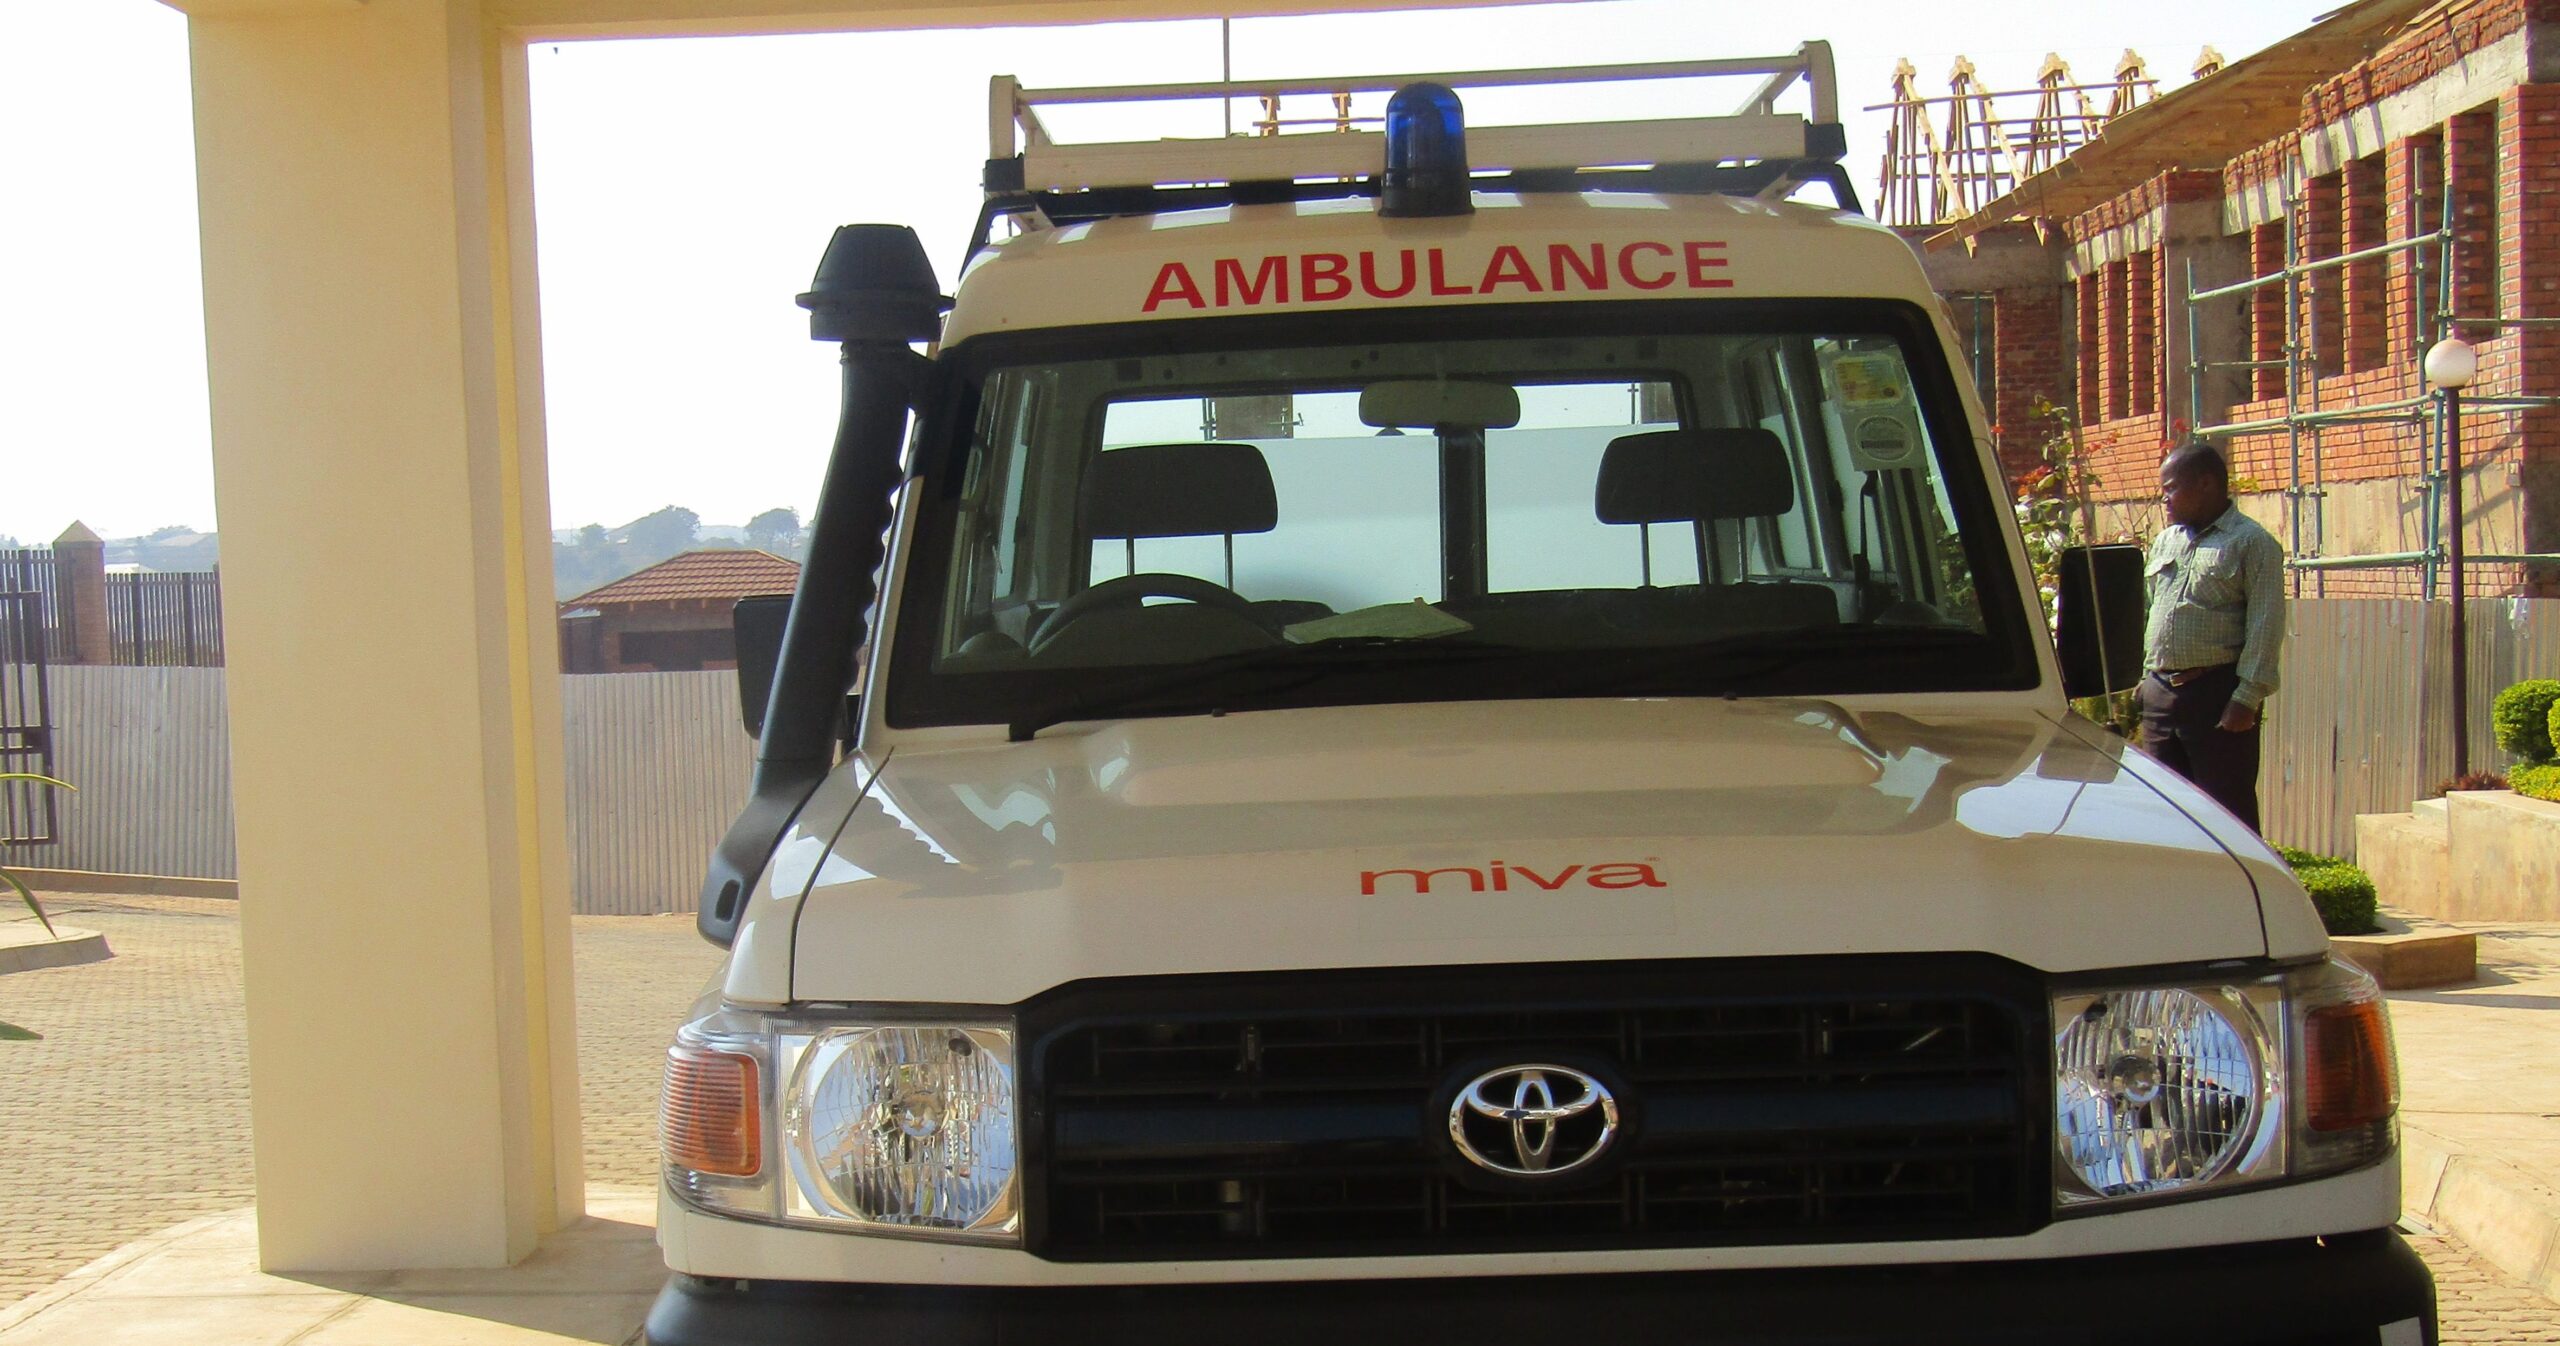 Ambulance picture 2